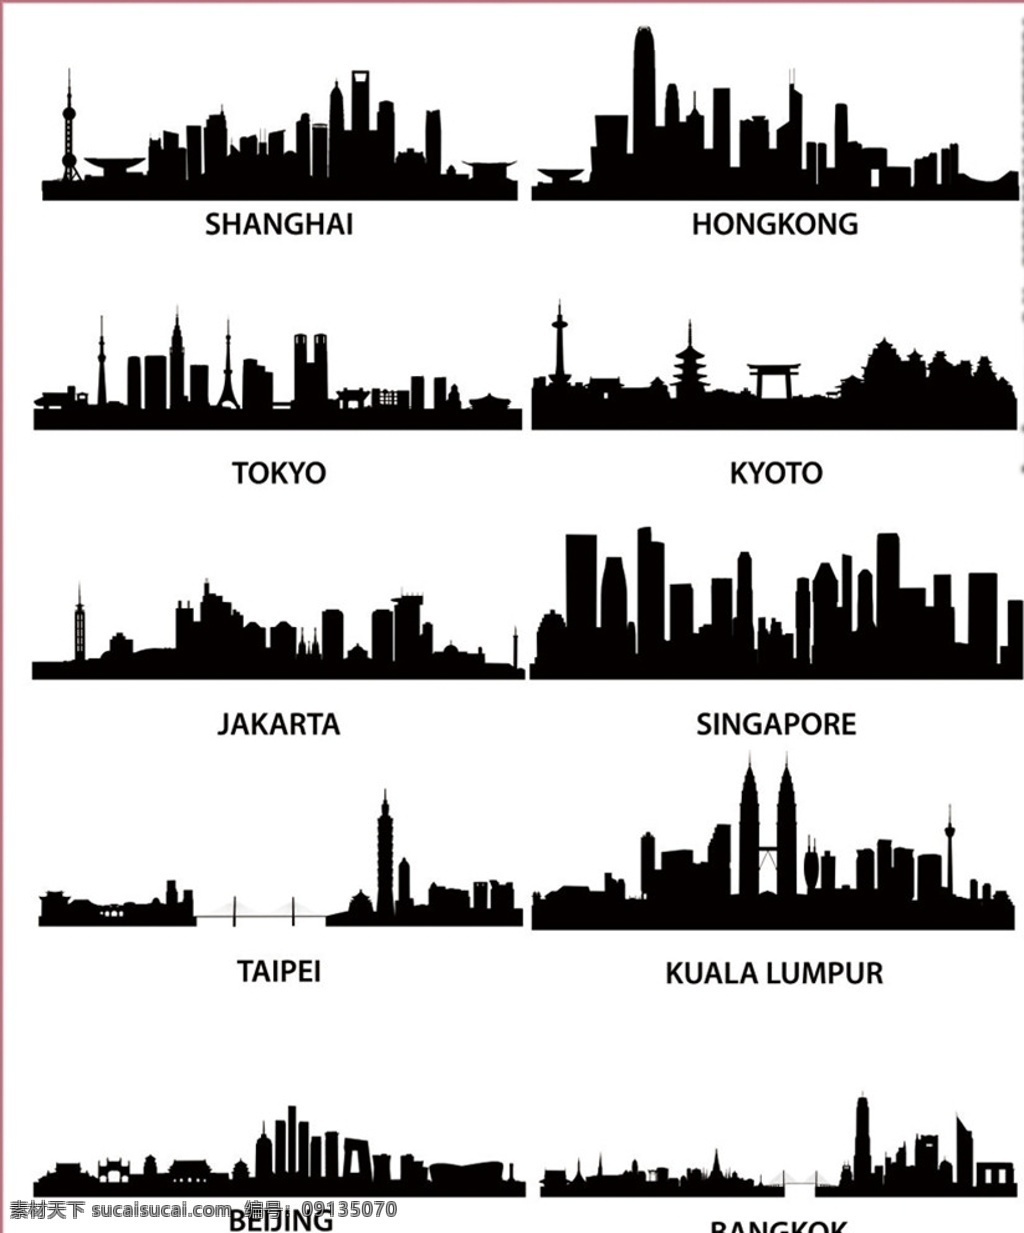 城市线条 矢量城市剪影 著名城市 城市剪影 矢量城市 城市剪影形状 卡通剪影 矢量剪影